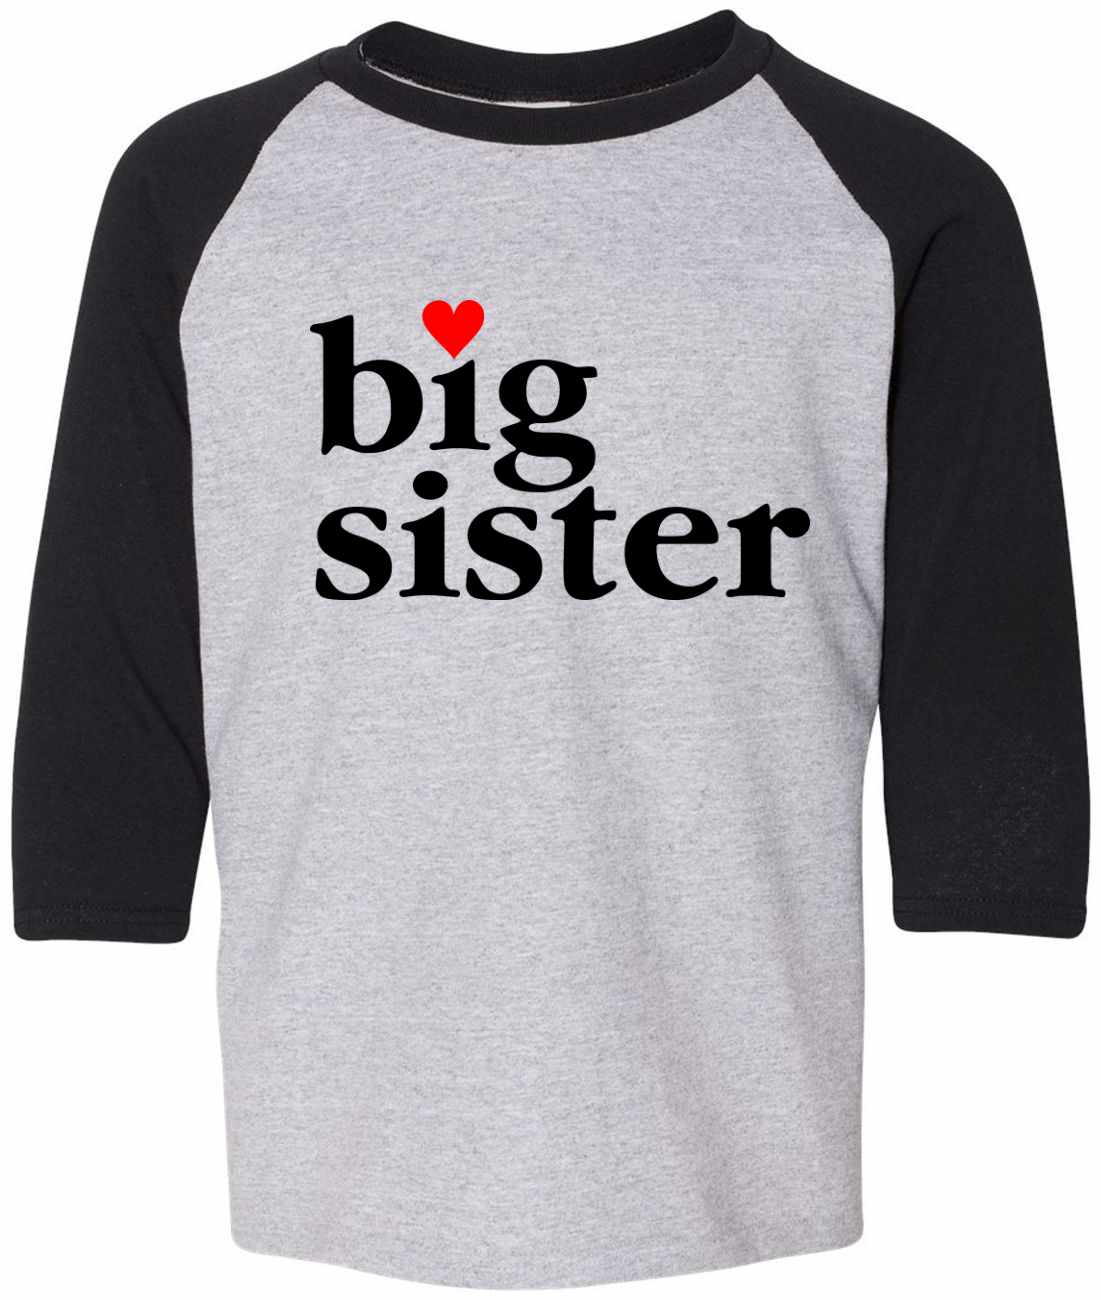 Big Sister on Youth Baseball Shirt